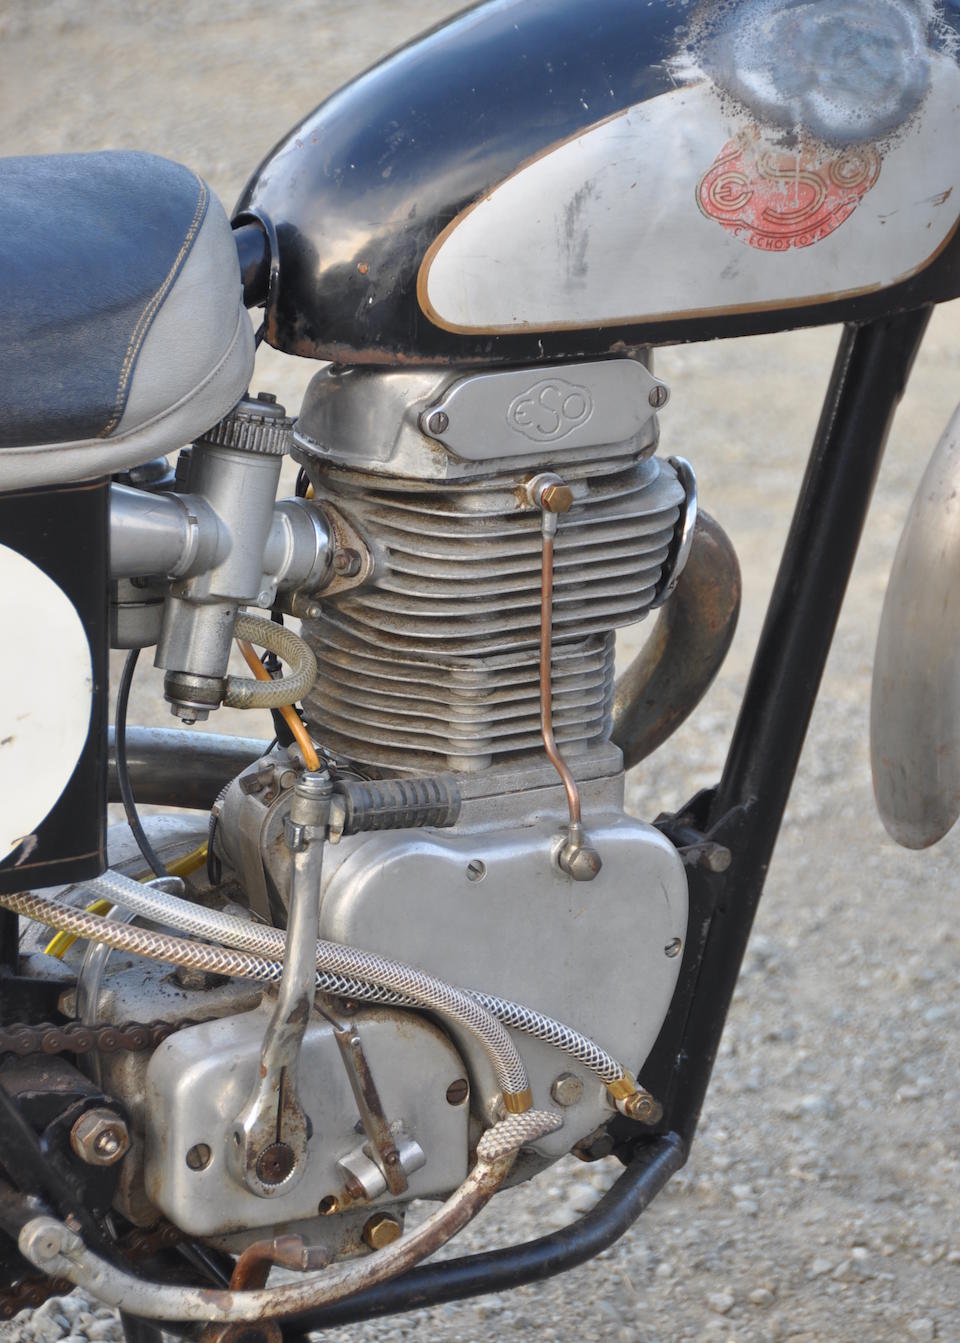 Rare Czechoslovakian four-stroke motocrosser,c.1959 ESO  500 Frame no. 1625 Engine no. 500325/196